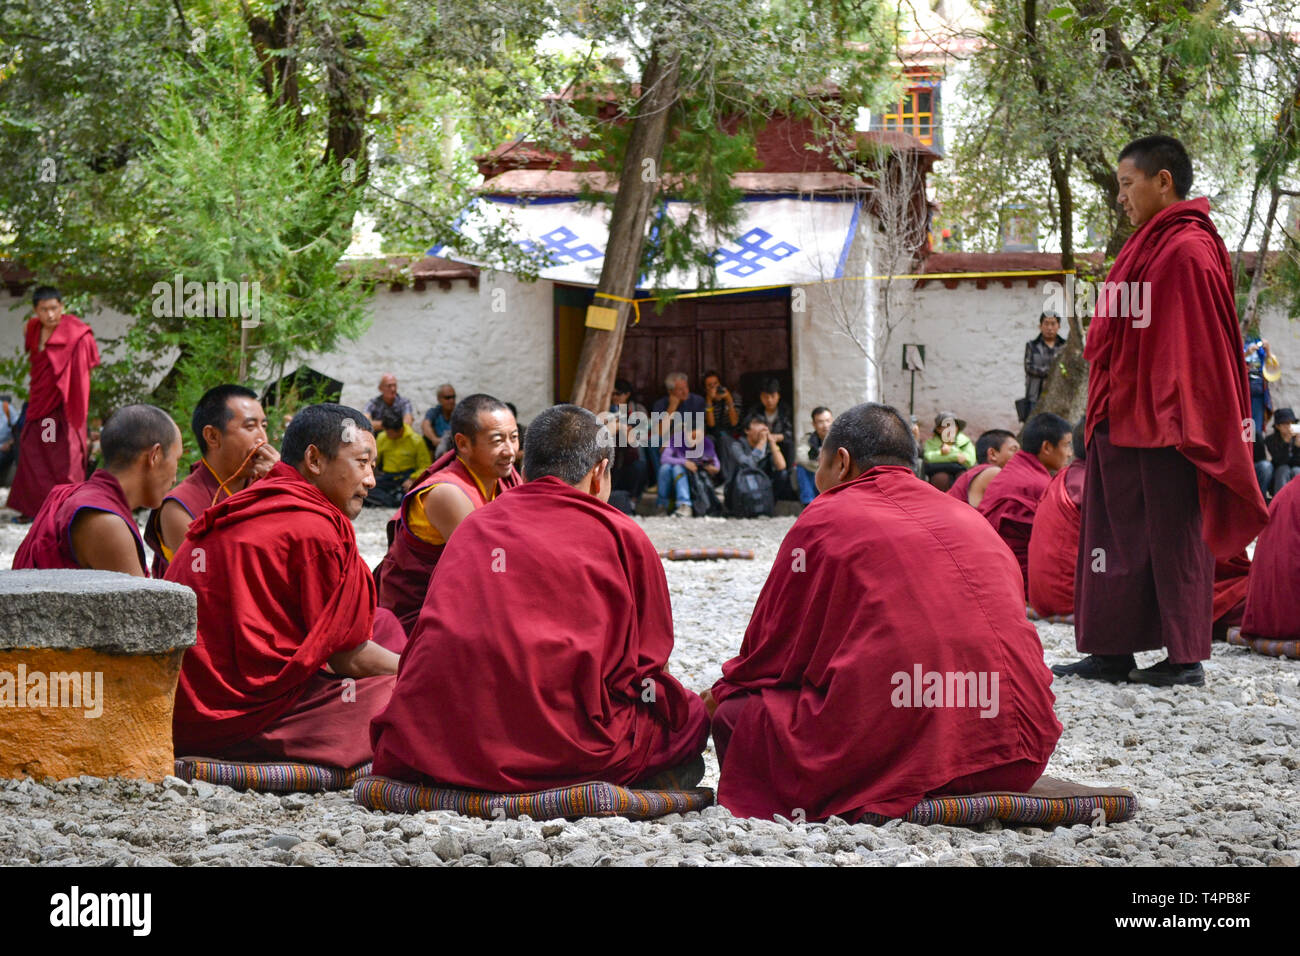 Los debates entre los monjes en el Budismo Tibetano doctrinas en el monasterio de Sera, Lhasa, Tibet Foto de stock